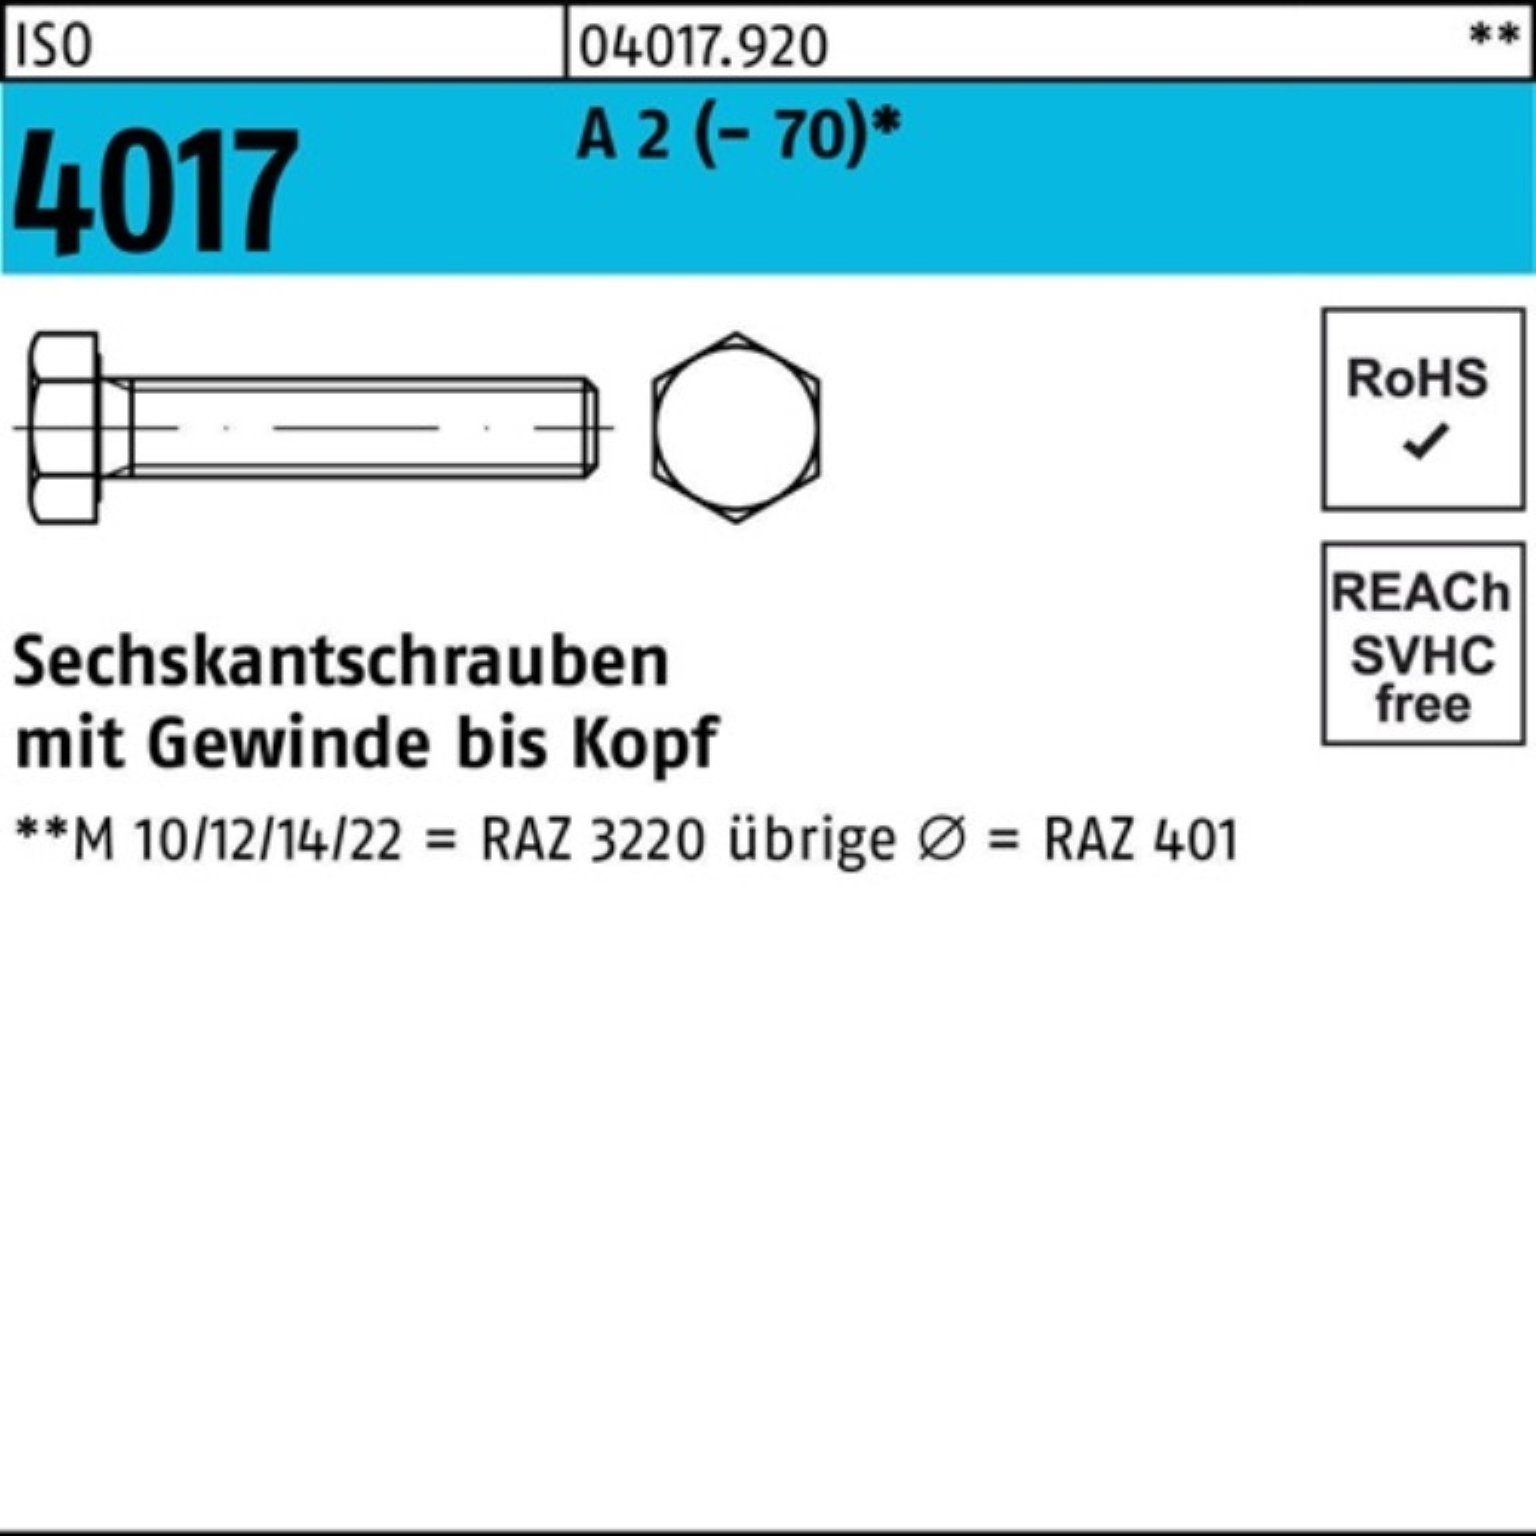 Bufab Sechskantschraube 200er Pack Sechskantschraube ISO 4017 VG M6x 35 A 2 (70) 200 Stück